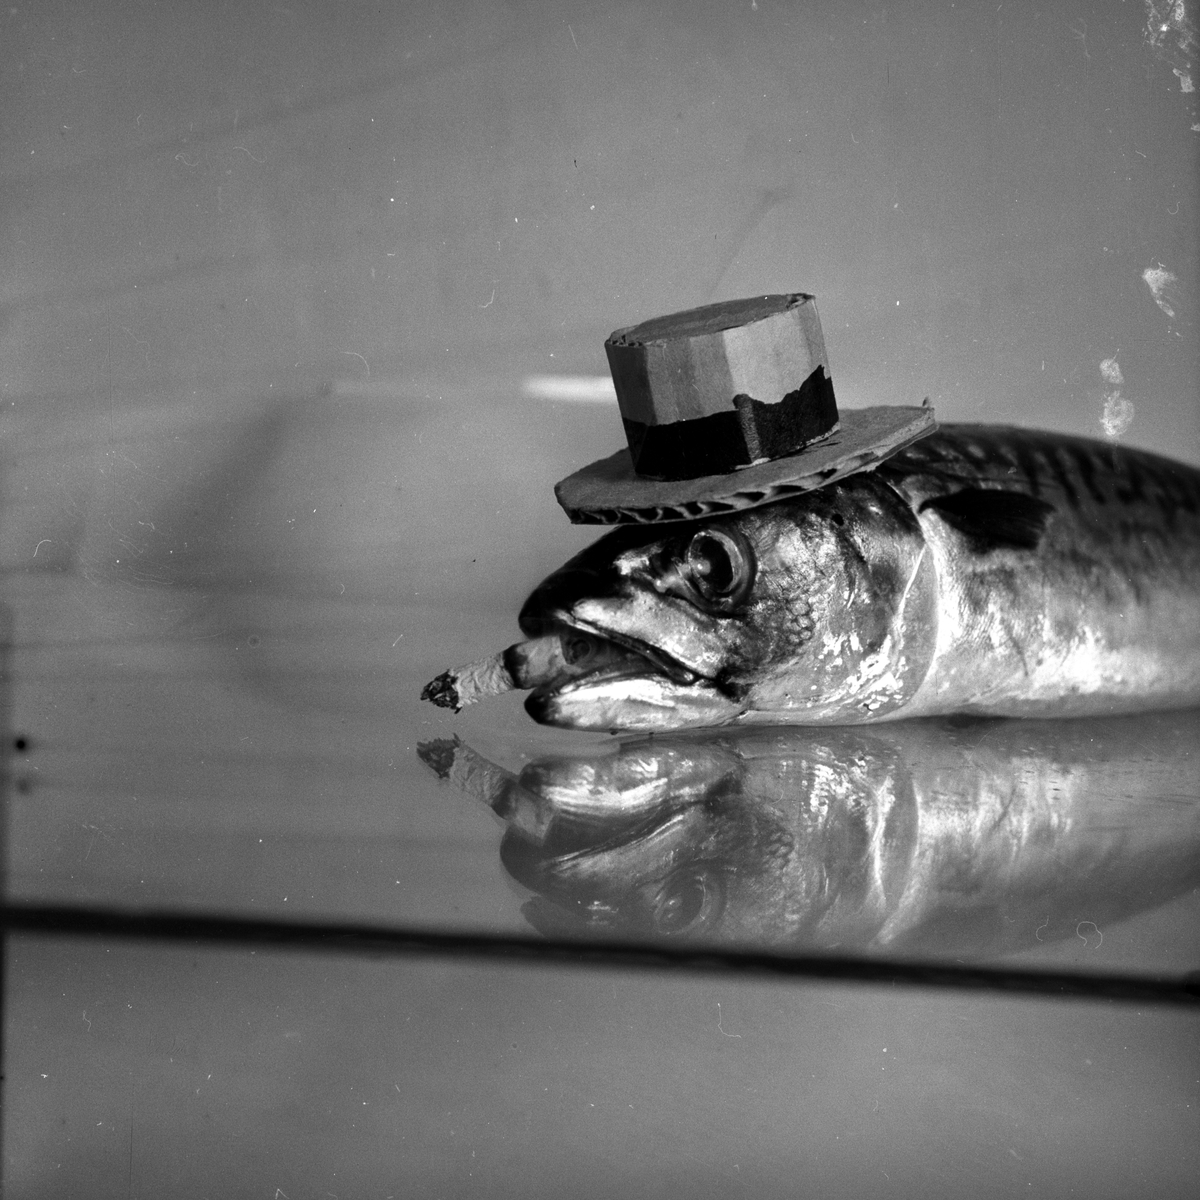 Mann som later som skal spise rå makrell.
Fotografert 1954.